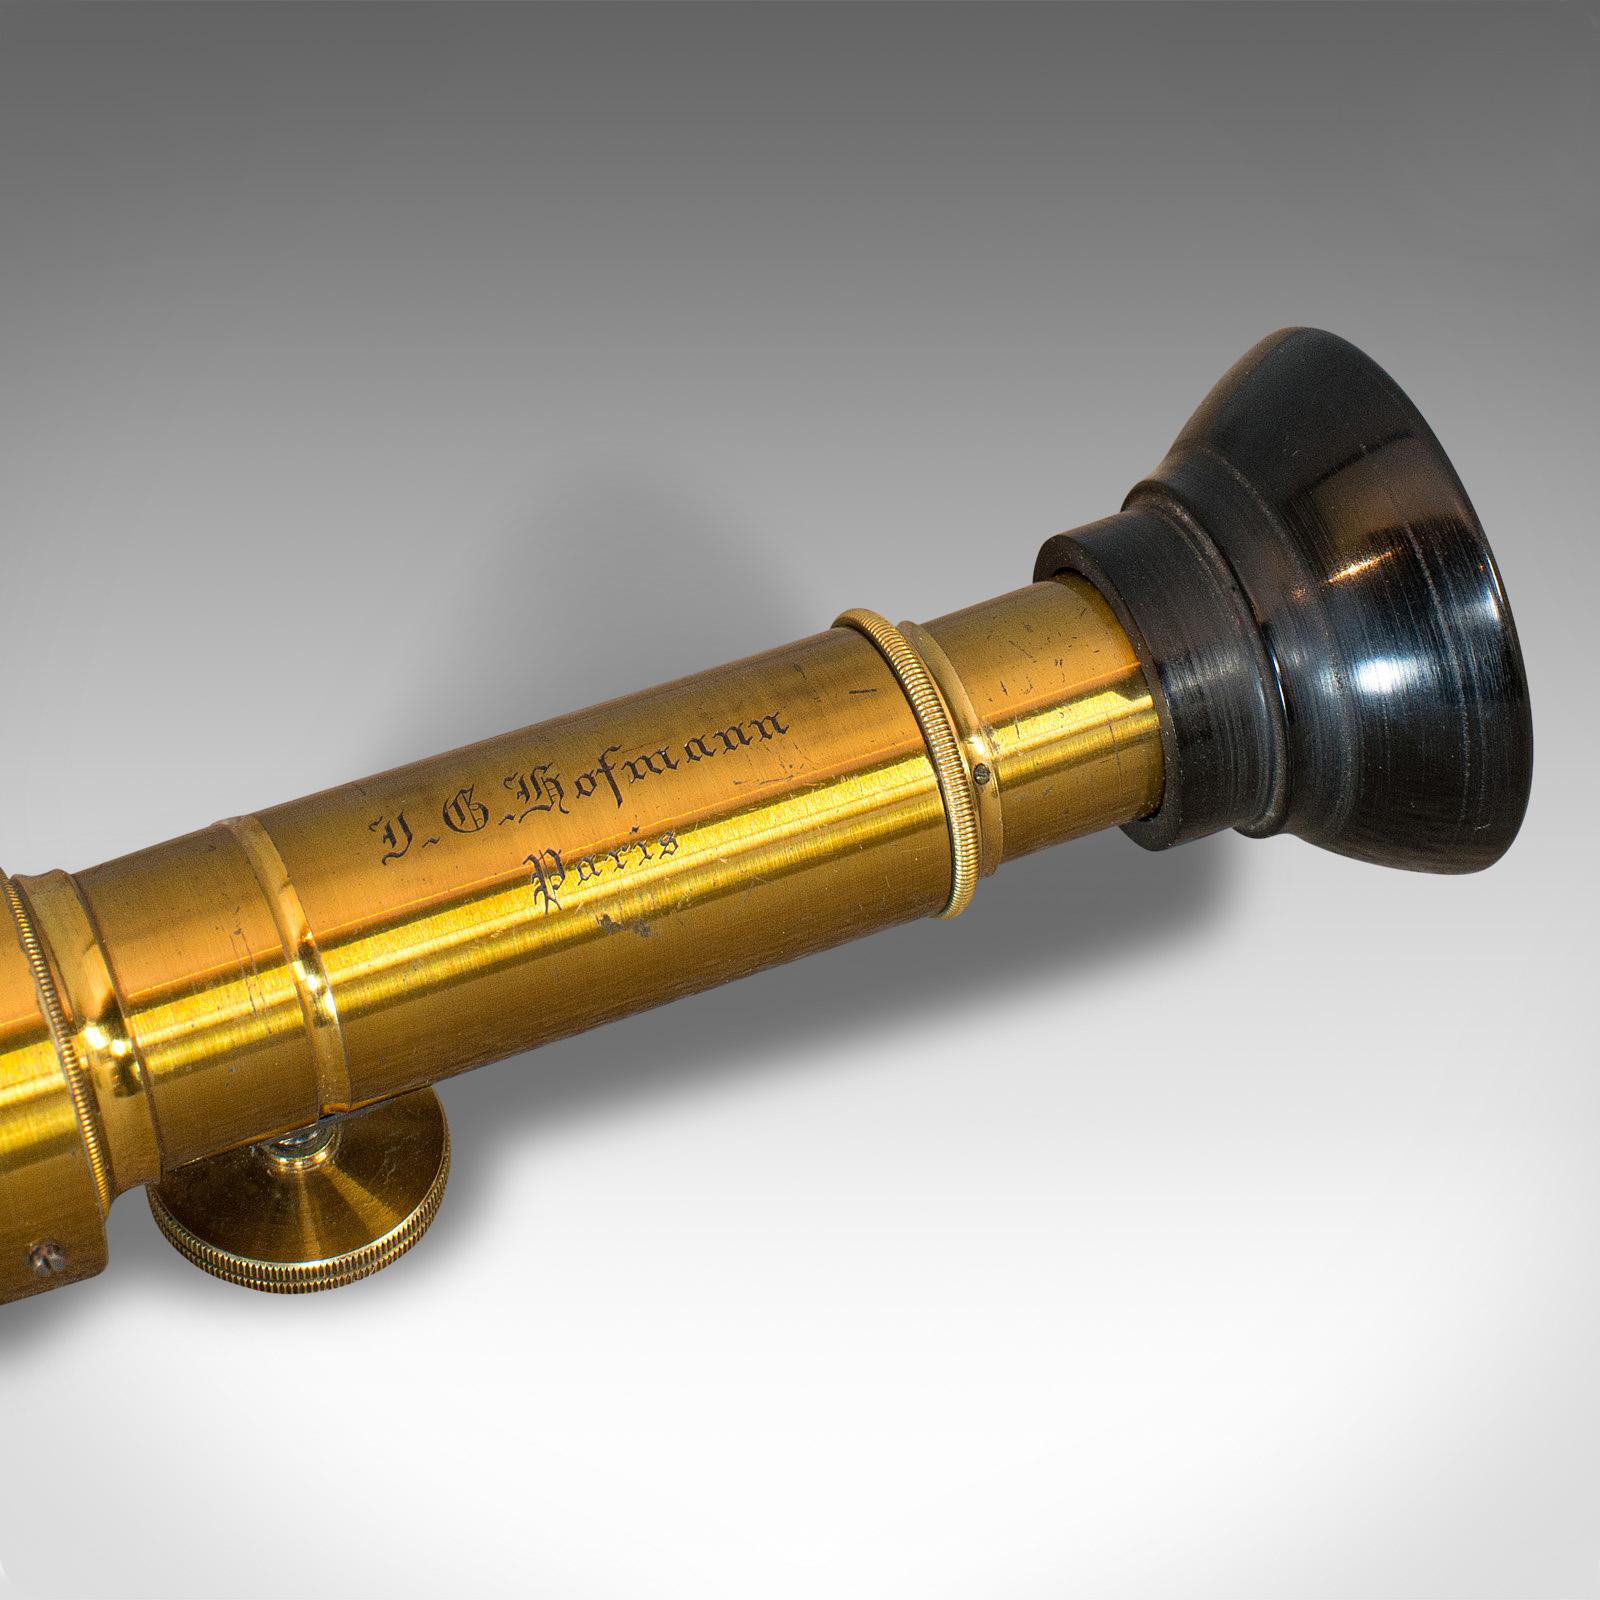 Antique Spectrometer, French, Brass, Scientific Instrument, J G Hofmann, 1860 5